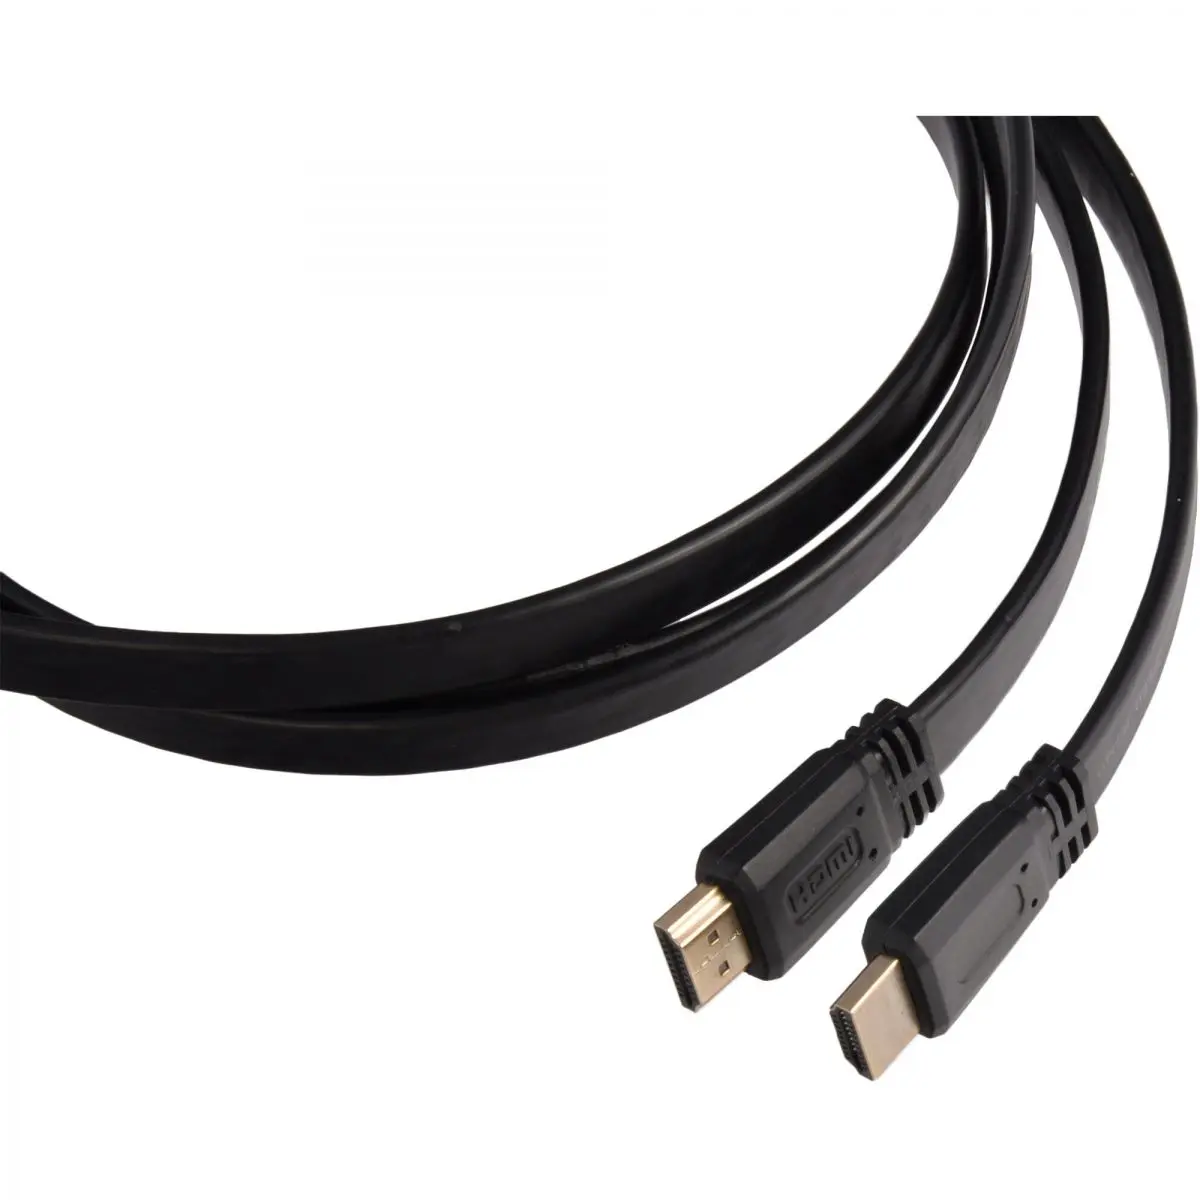 Cablu HDMI, bandă, lungime 3 m